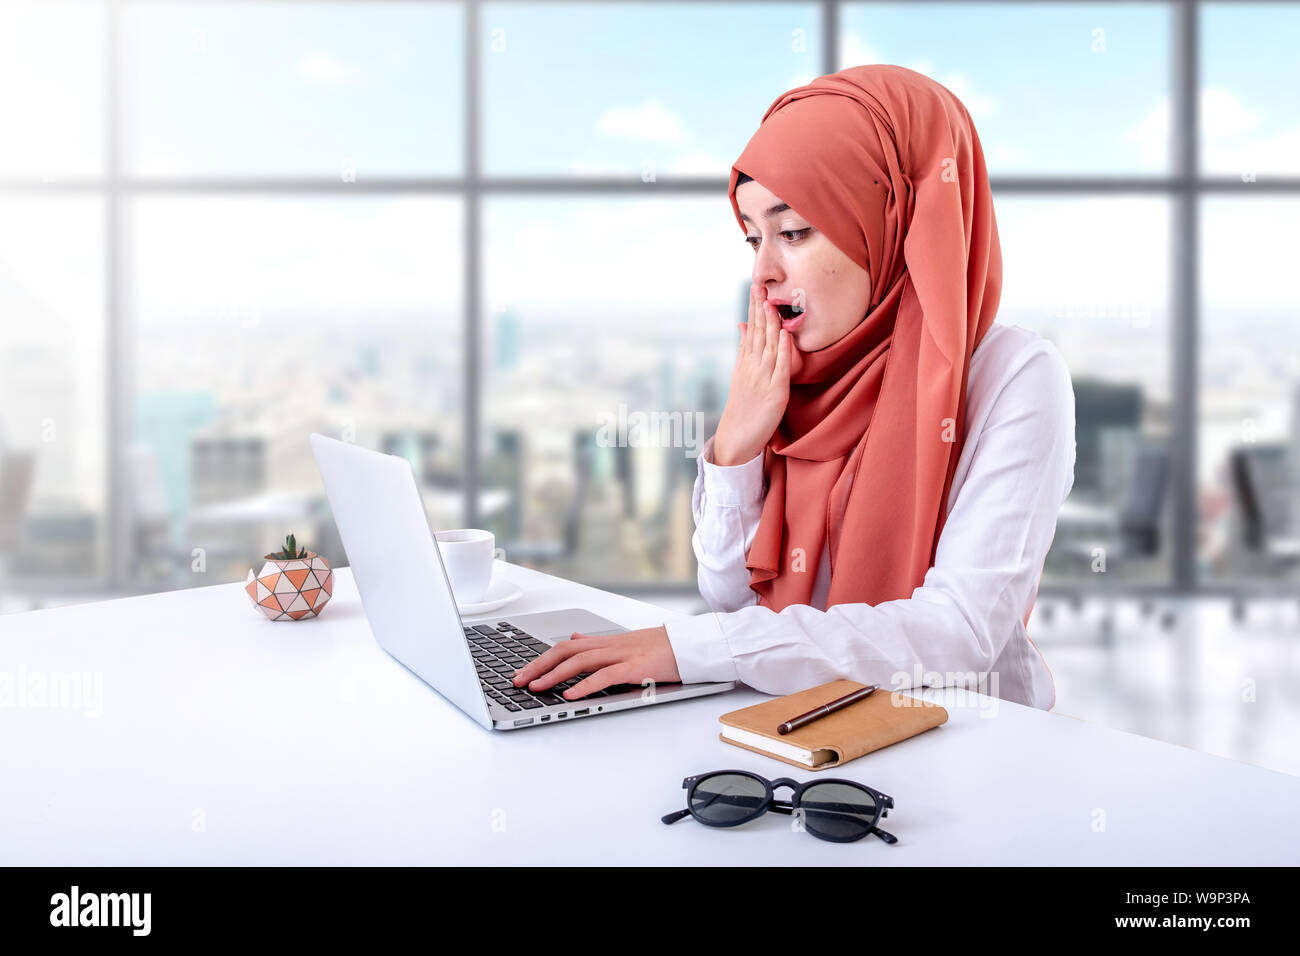 Donna musulmana a lavorare con il computer in ufficio, hijab ragazzina musulmana confuso o disorientato Foto Stock